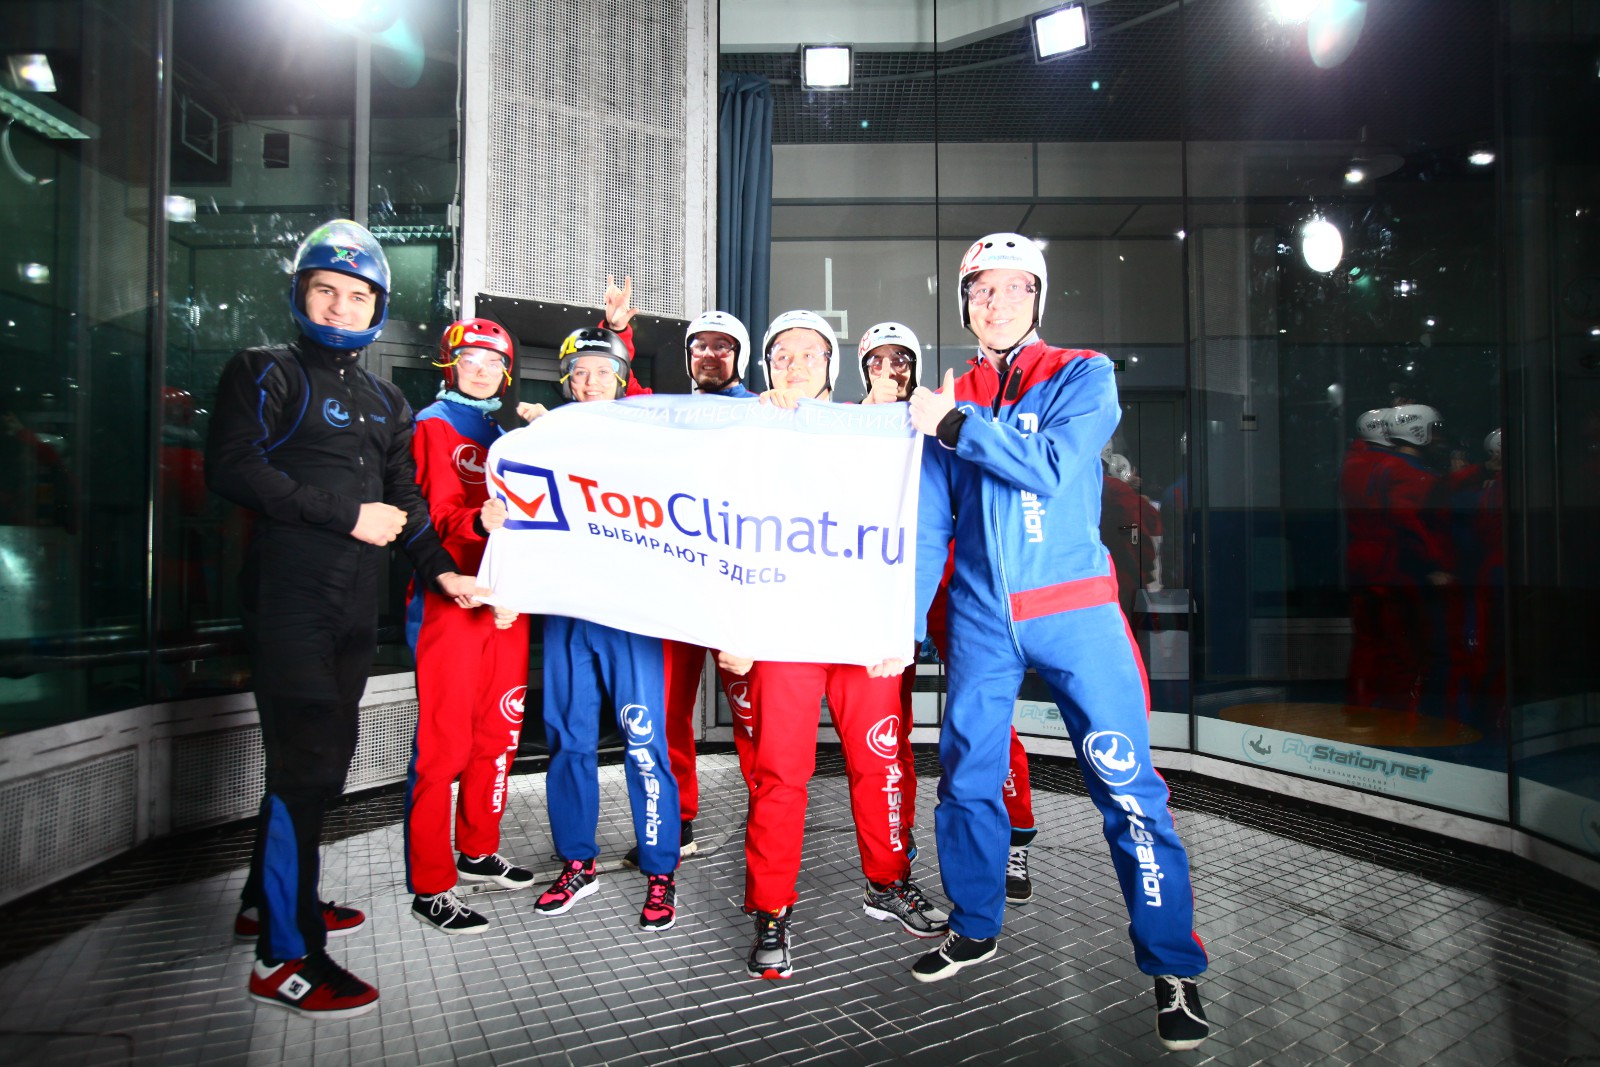 Команда TopClimat.ru отметила Новый год в аэротрубе! (фото)